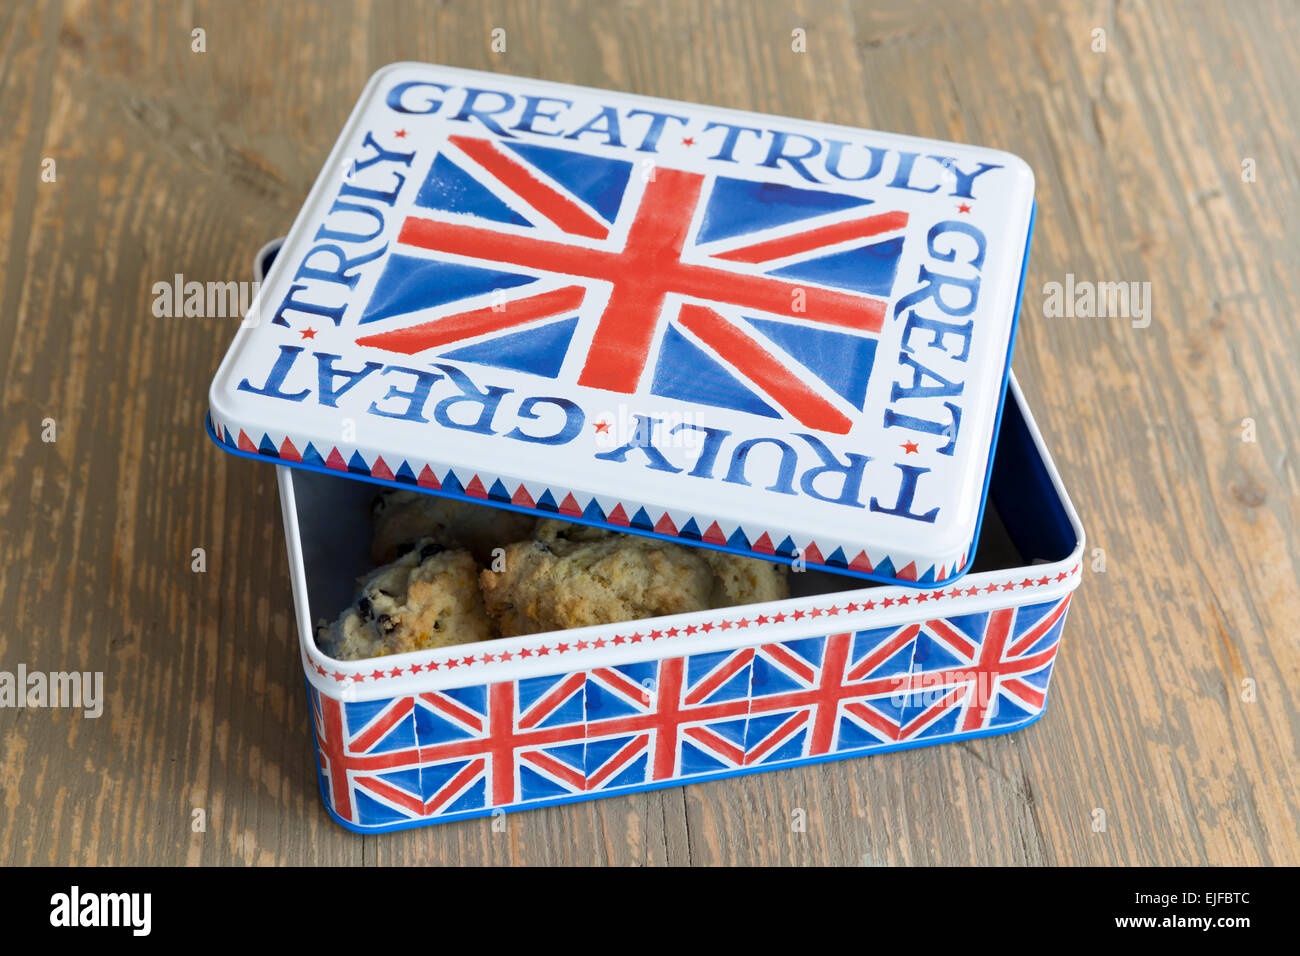 Inglese tradizionale fatto in casa roccia dolci dolci panini in teglia con Union Jack flag design Foto Stock